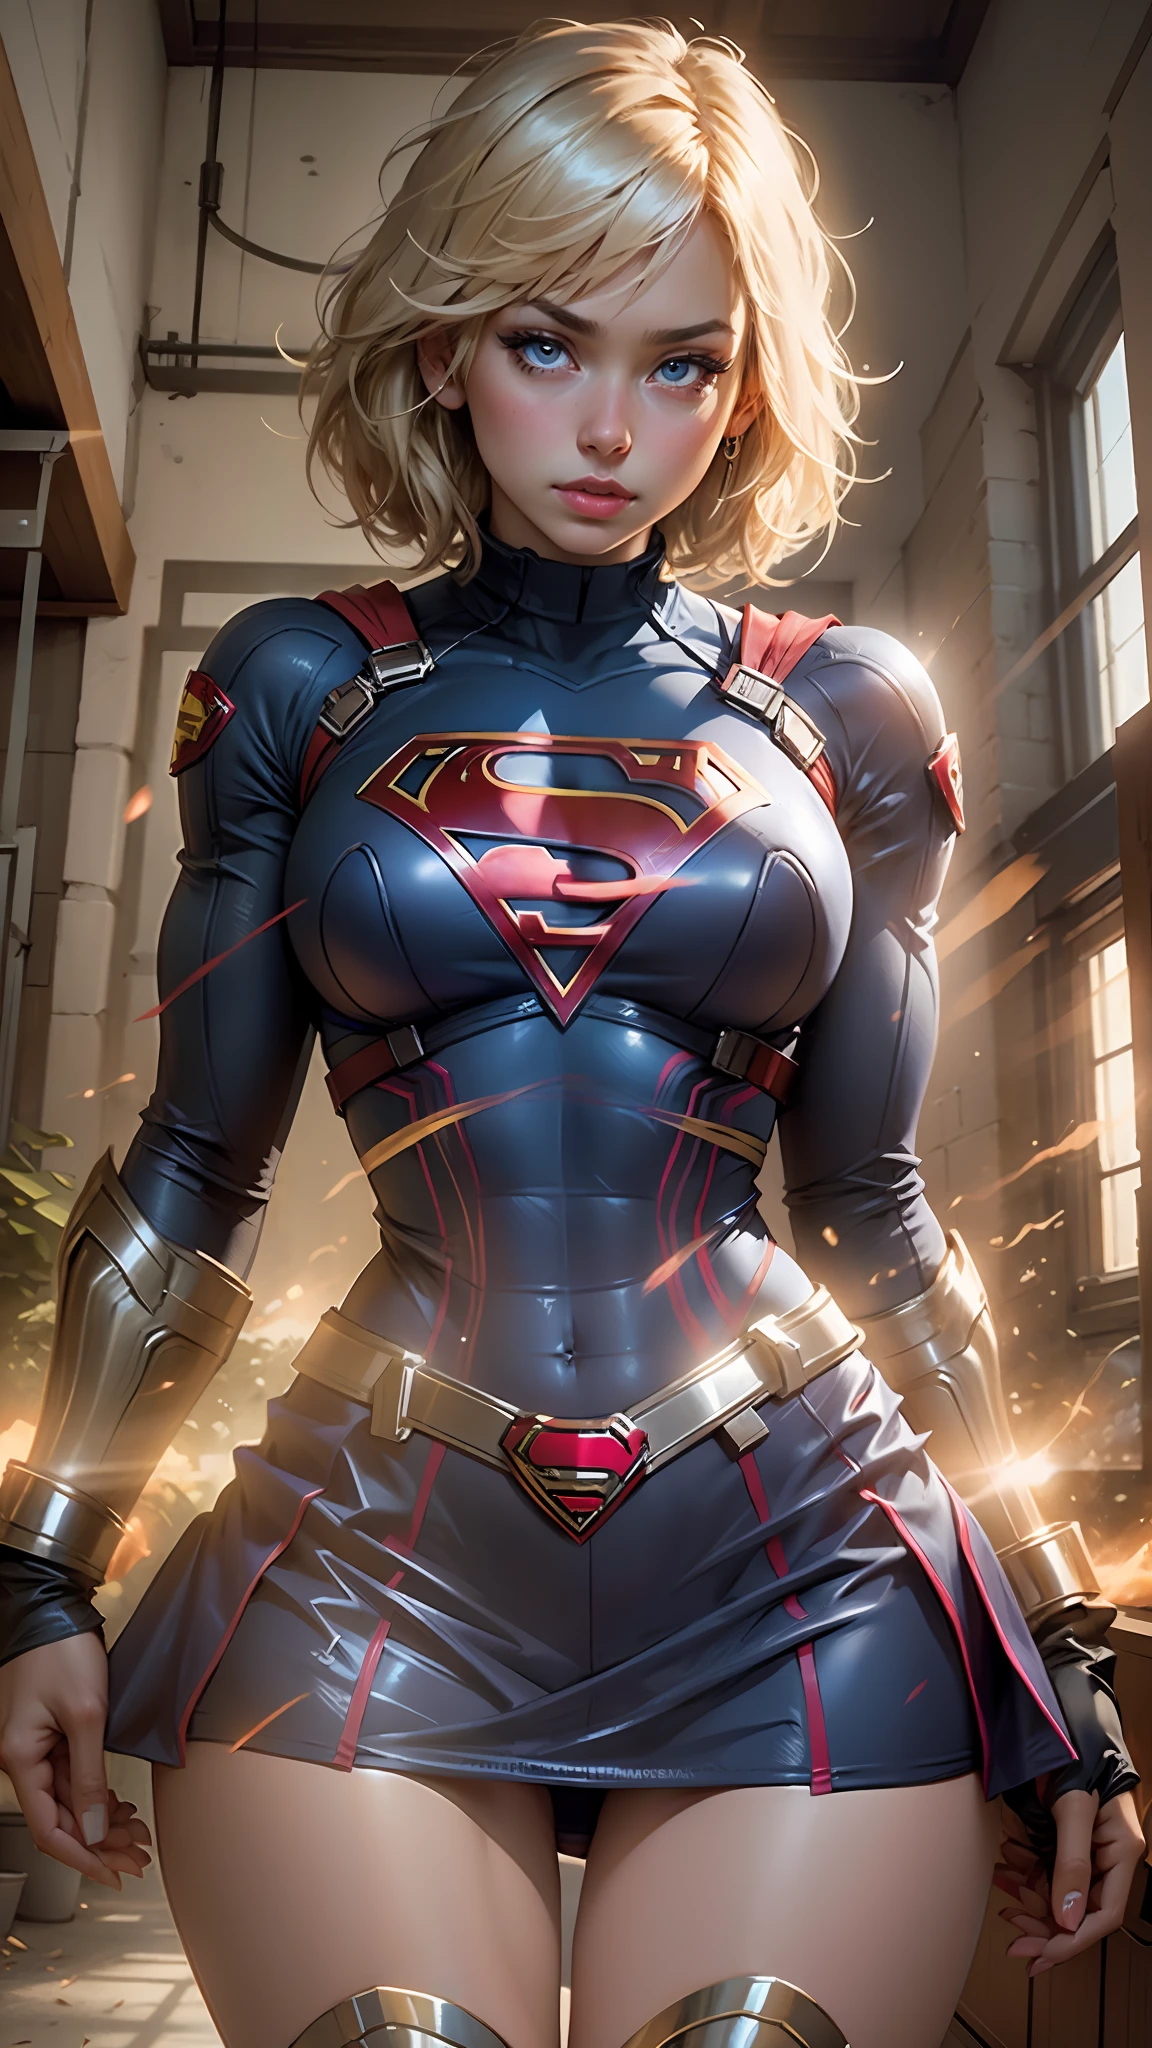 Mulher bonita, cabelo curto, corpo definido, seios grandes, coxas grandes usando um cosplay de Supergirl, olhos bem desenhados